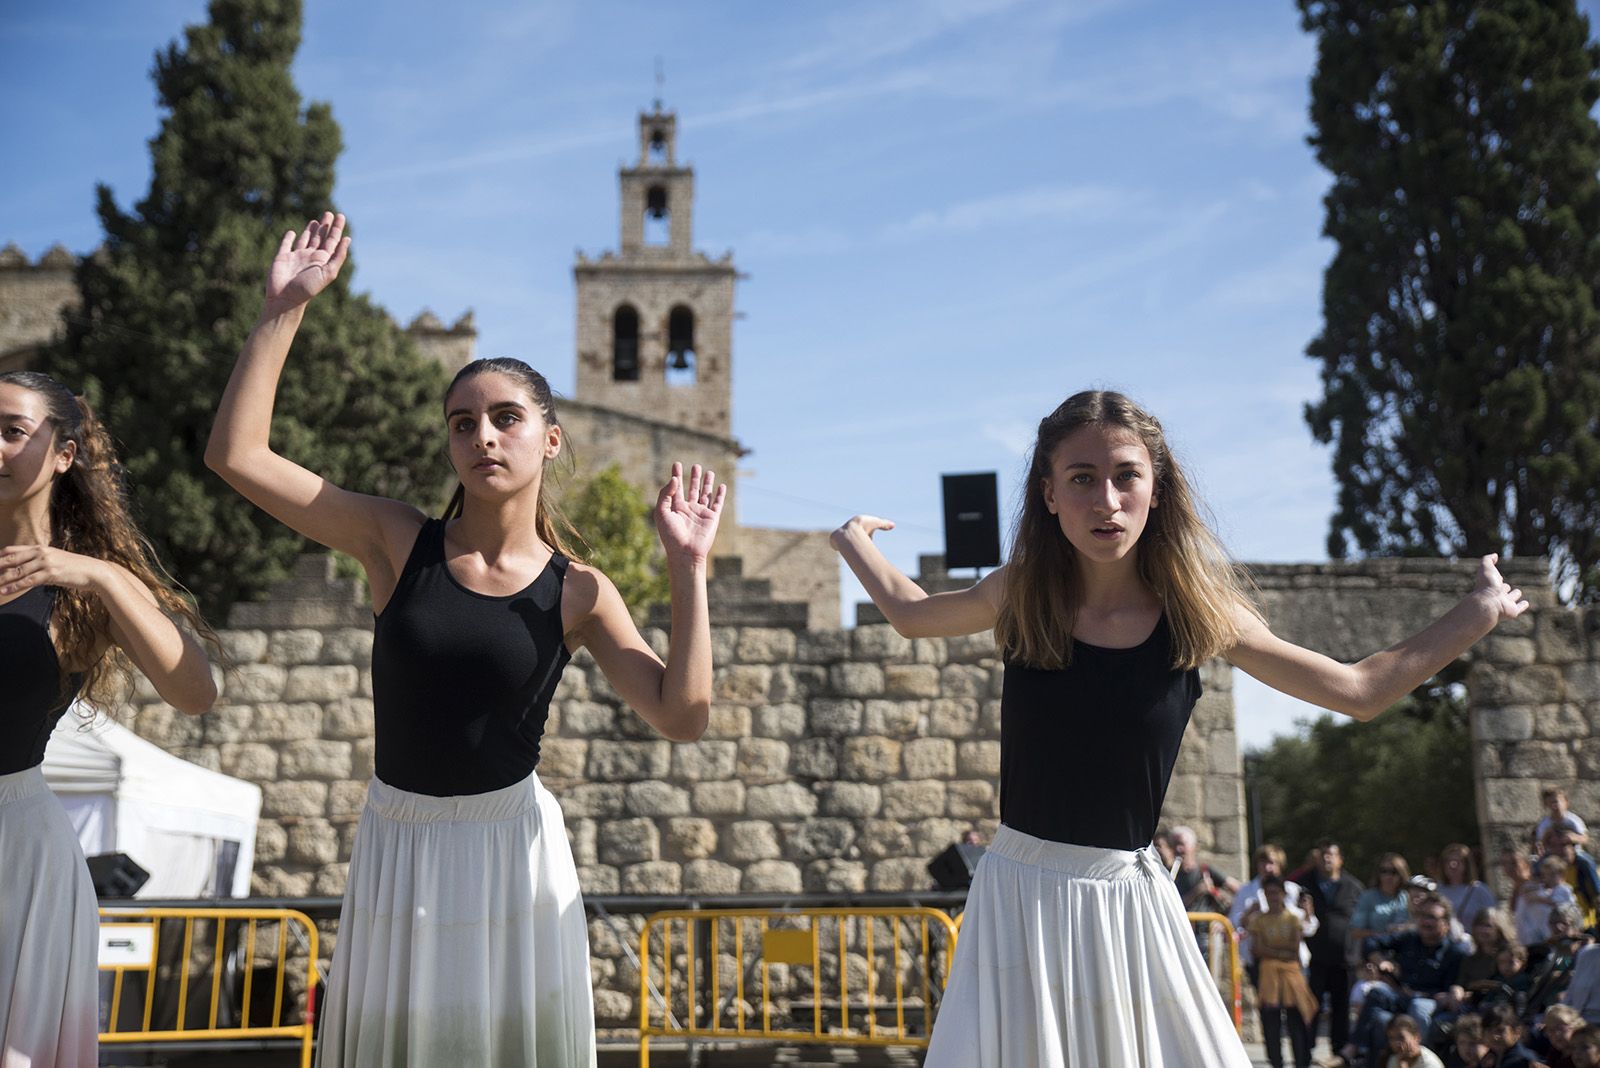 Ballada de Festa de Tardor de l'Esbart Sant Cugat Cos de dansa i juvenils. FOTO: Bernat Millet.